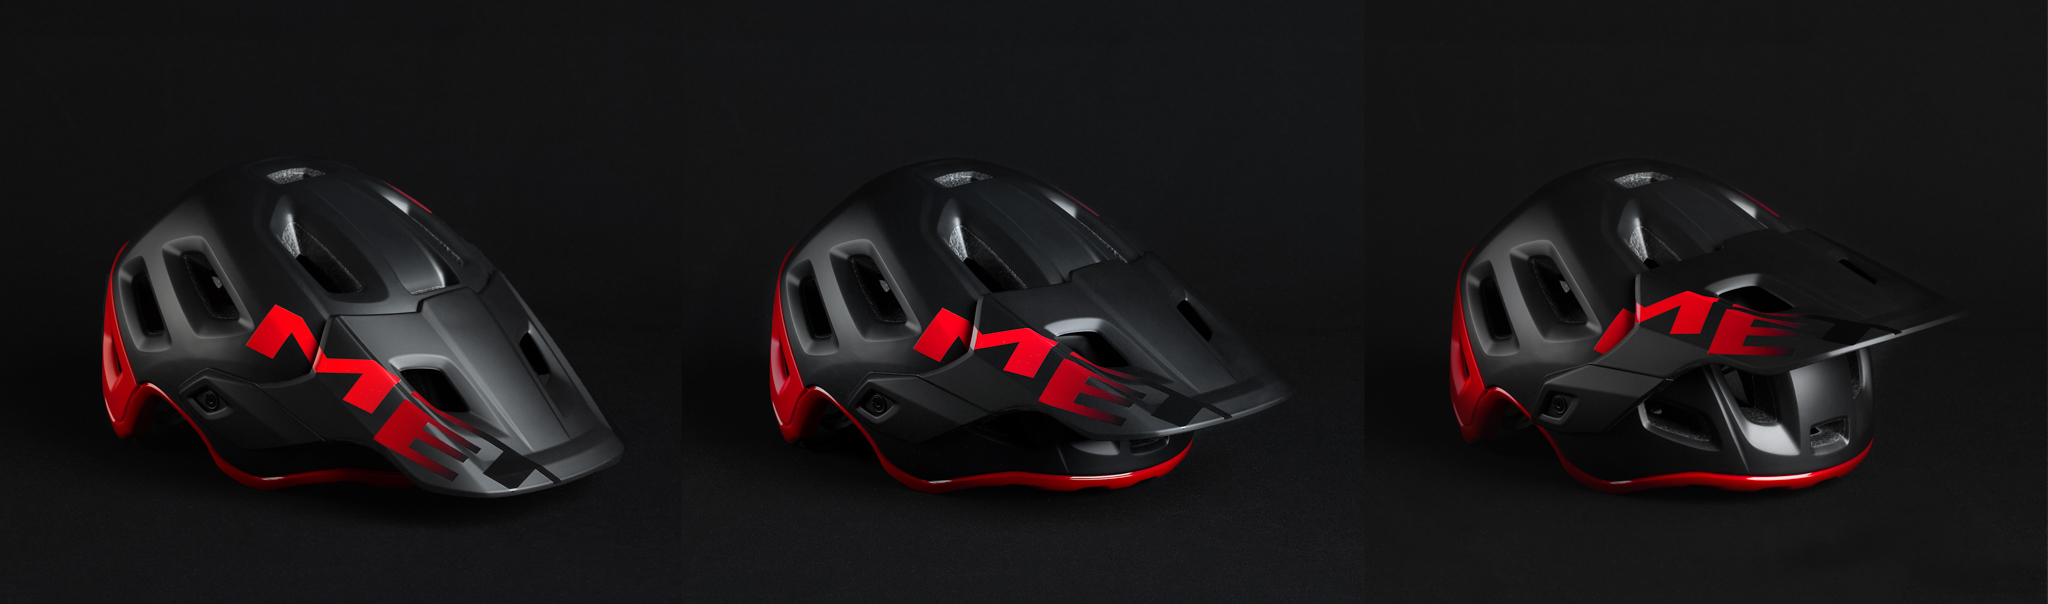 MET Roam: een nieuwe helm voor AM en enduro